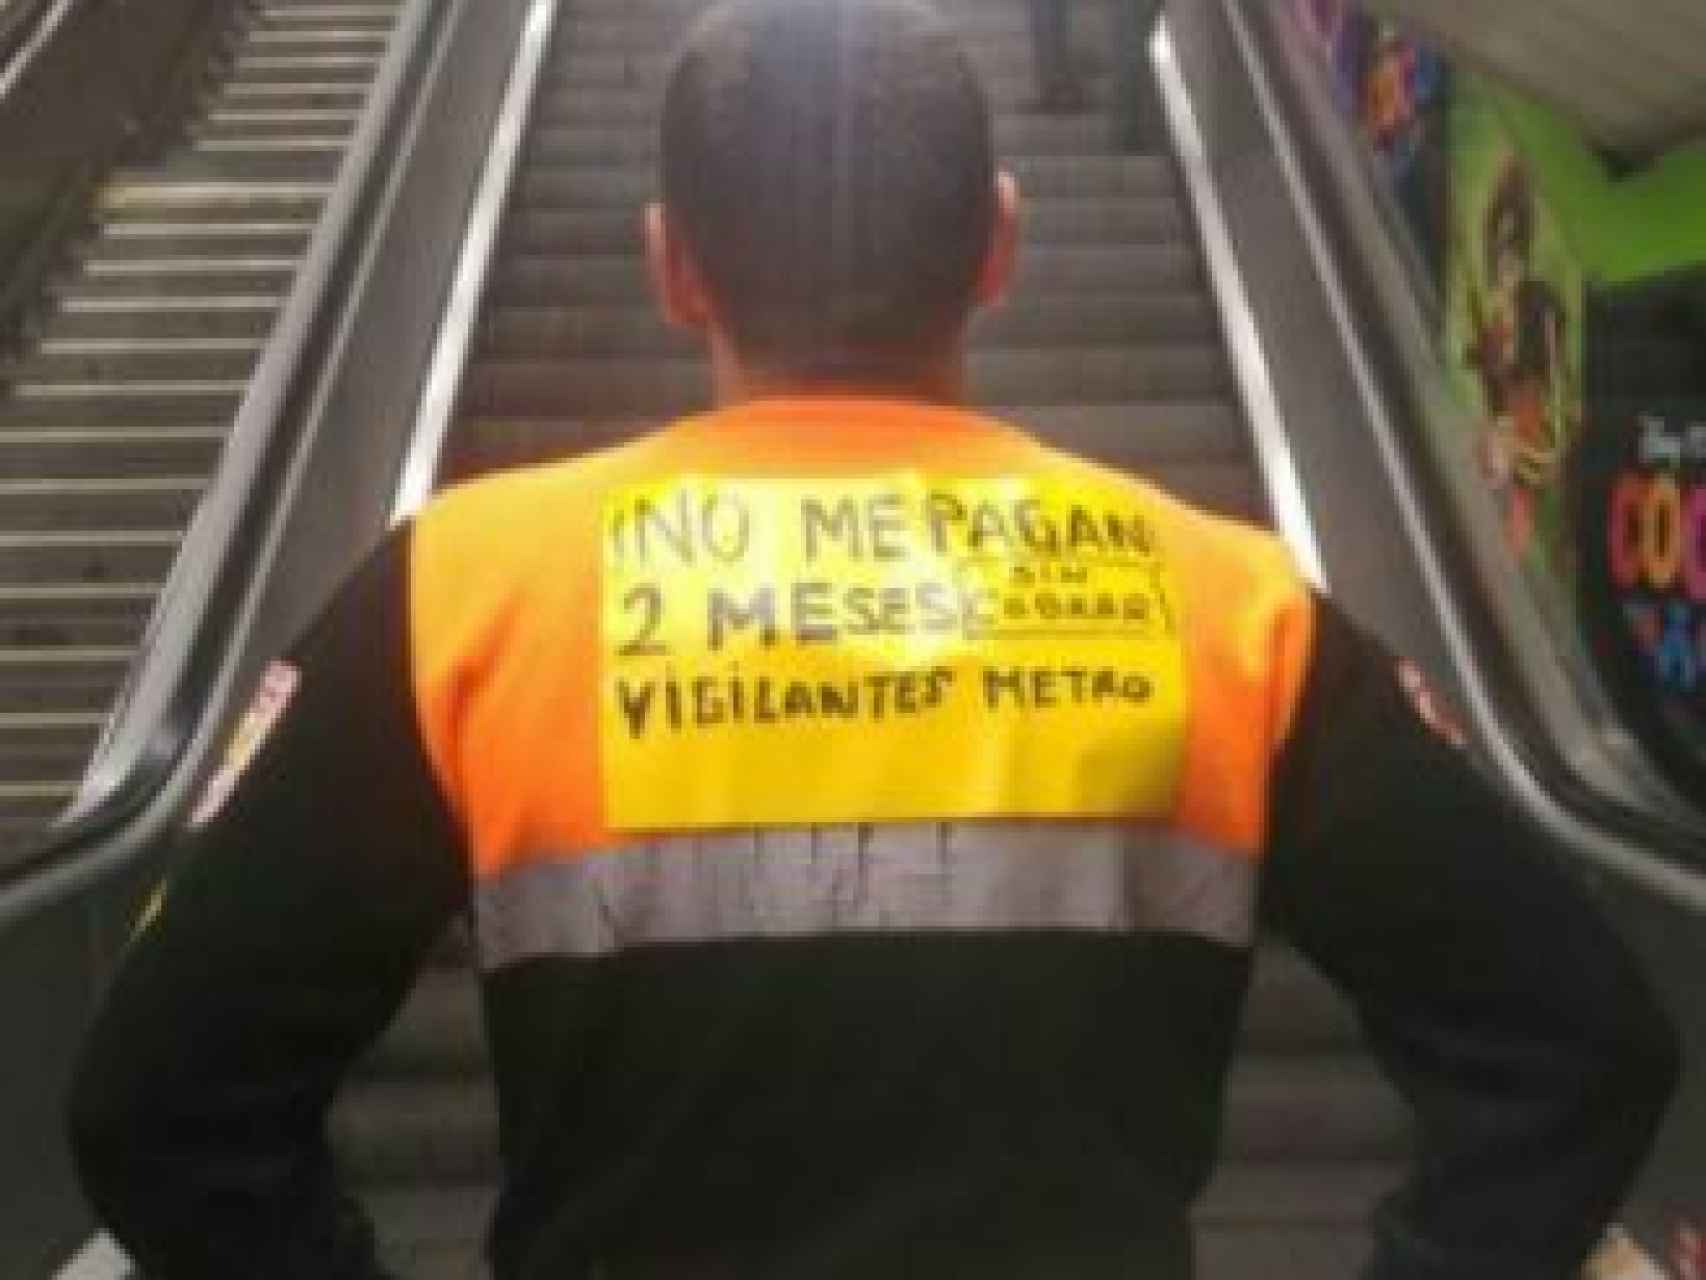 550 empleados de Seguridad del Metro de Madrid llevan dos meses sin cobrar.